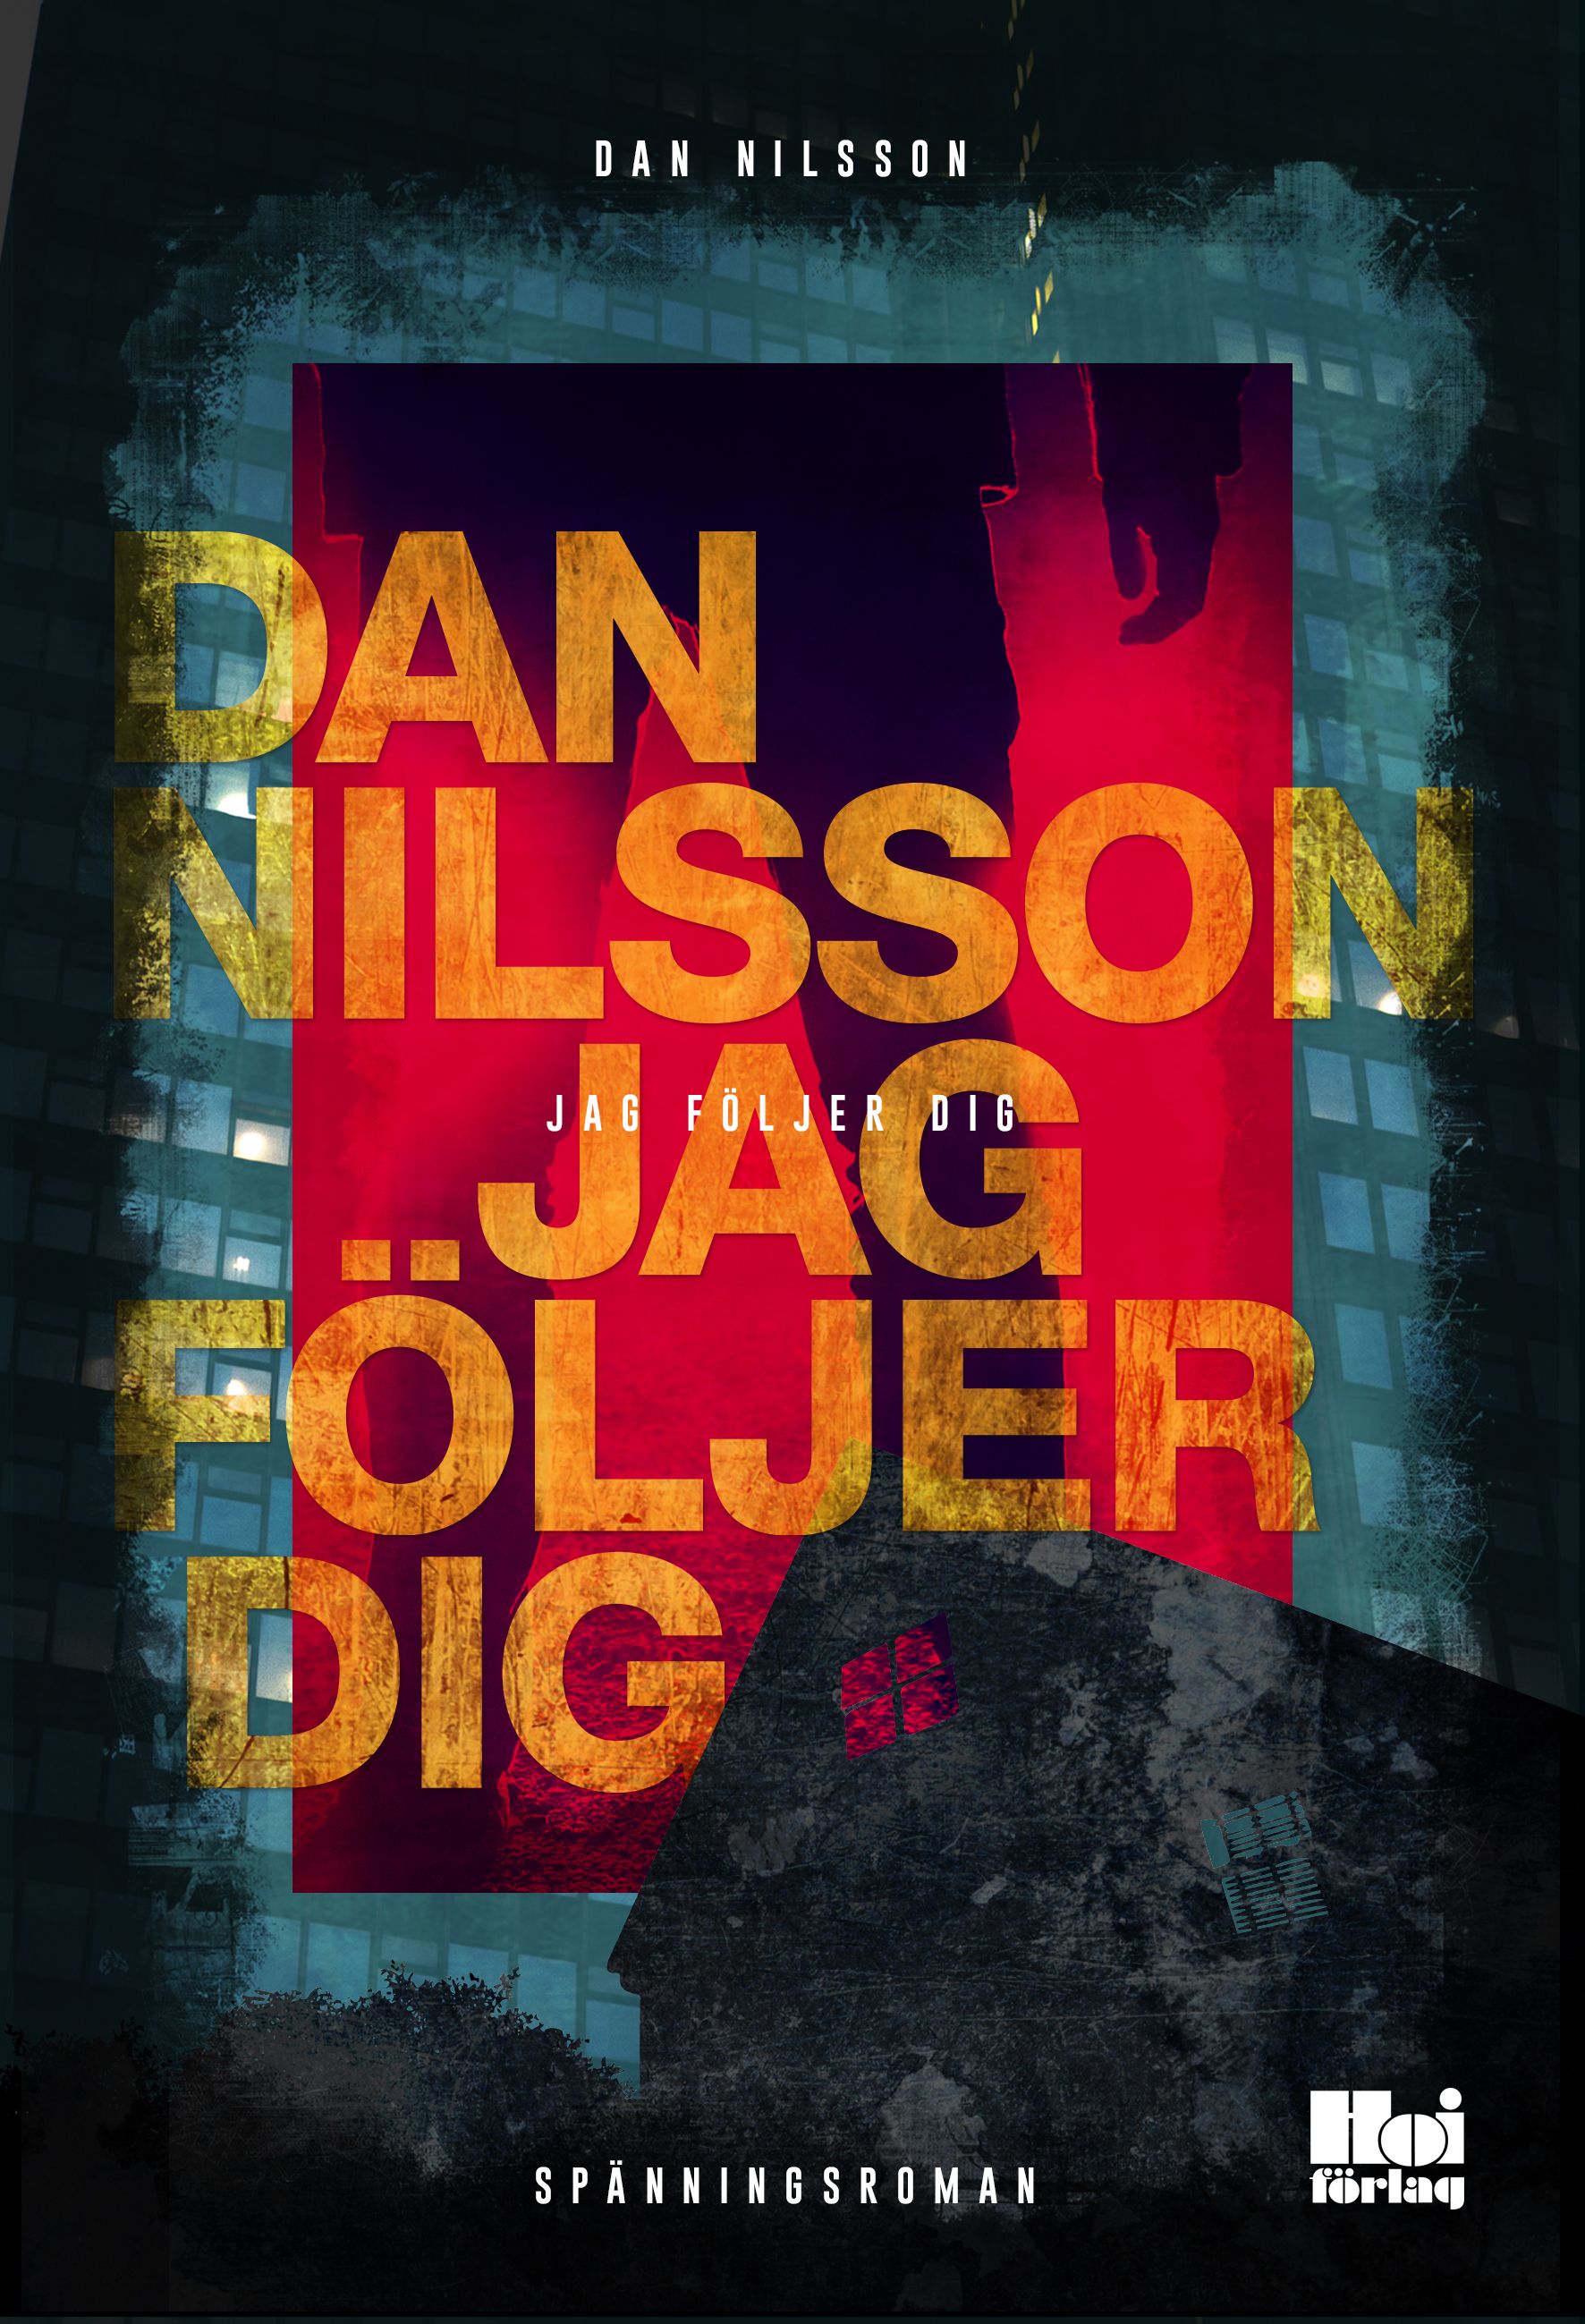 Jag följer dig, eBook by Dan Nilsson